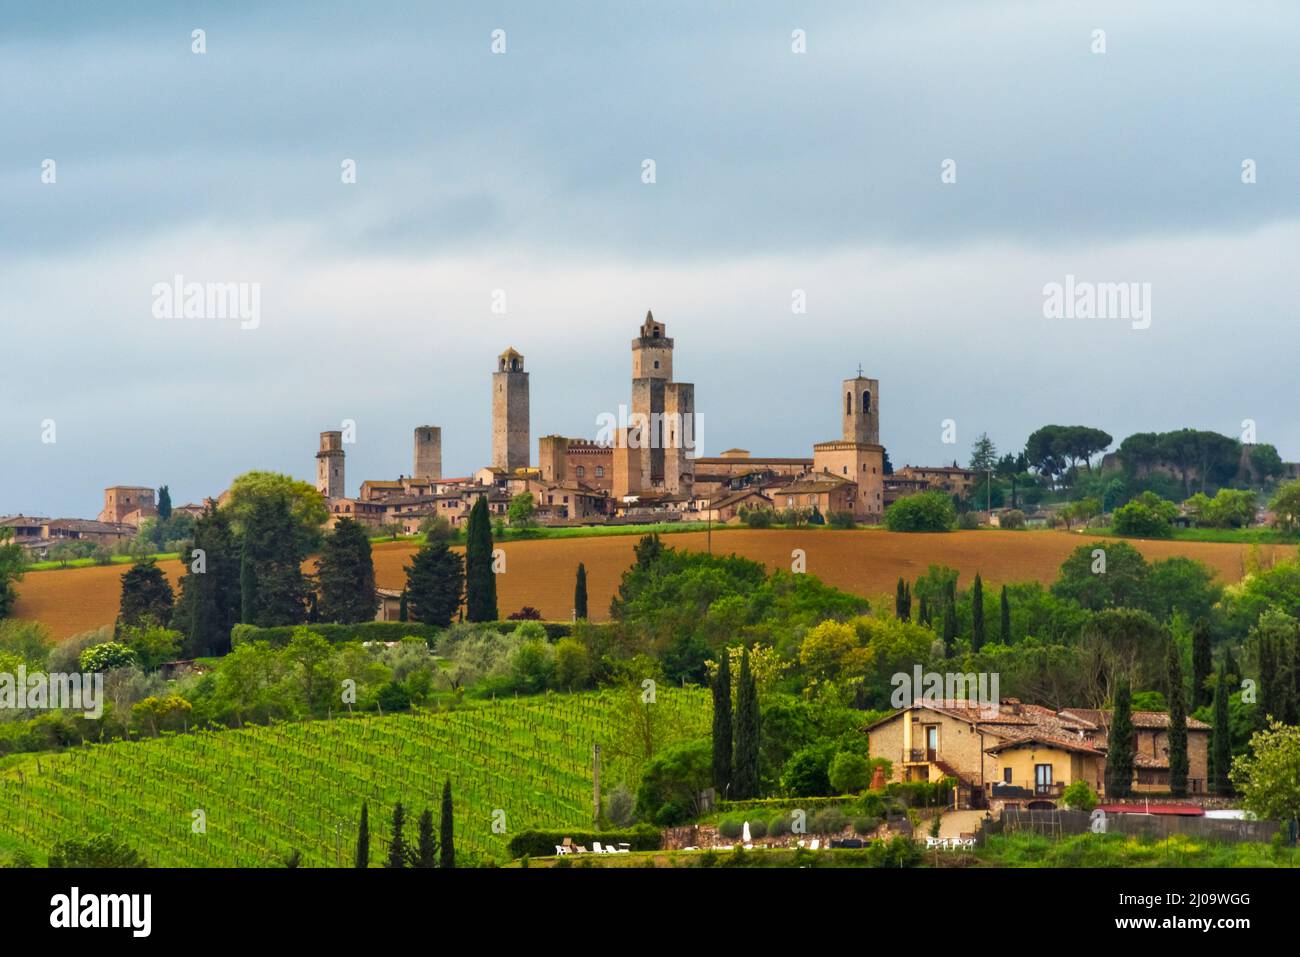 Centro storico di San Gimignano, Patrimonio dell'Umanità dell'UNESCO, Provincia di Siena, Regione Toscana, Italia Foto Stock